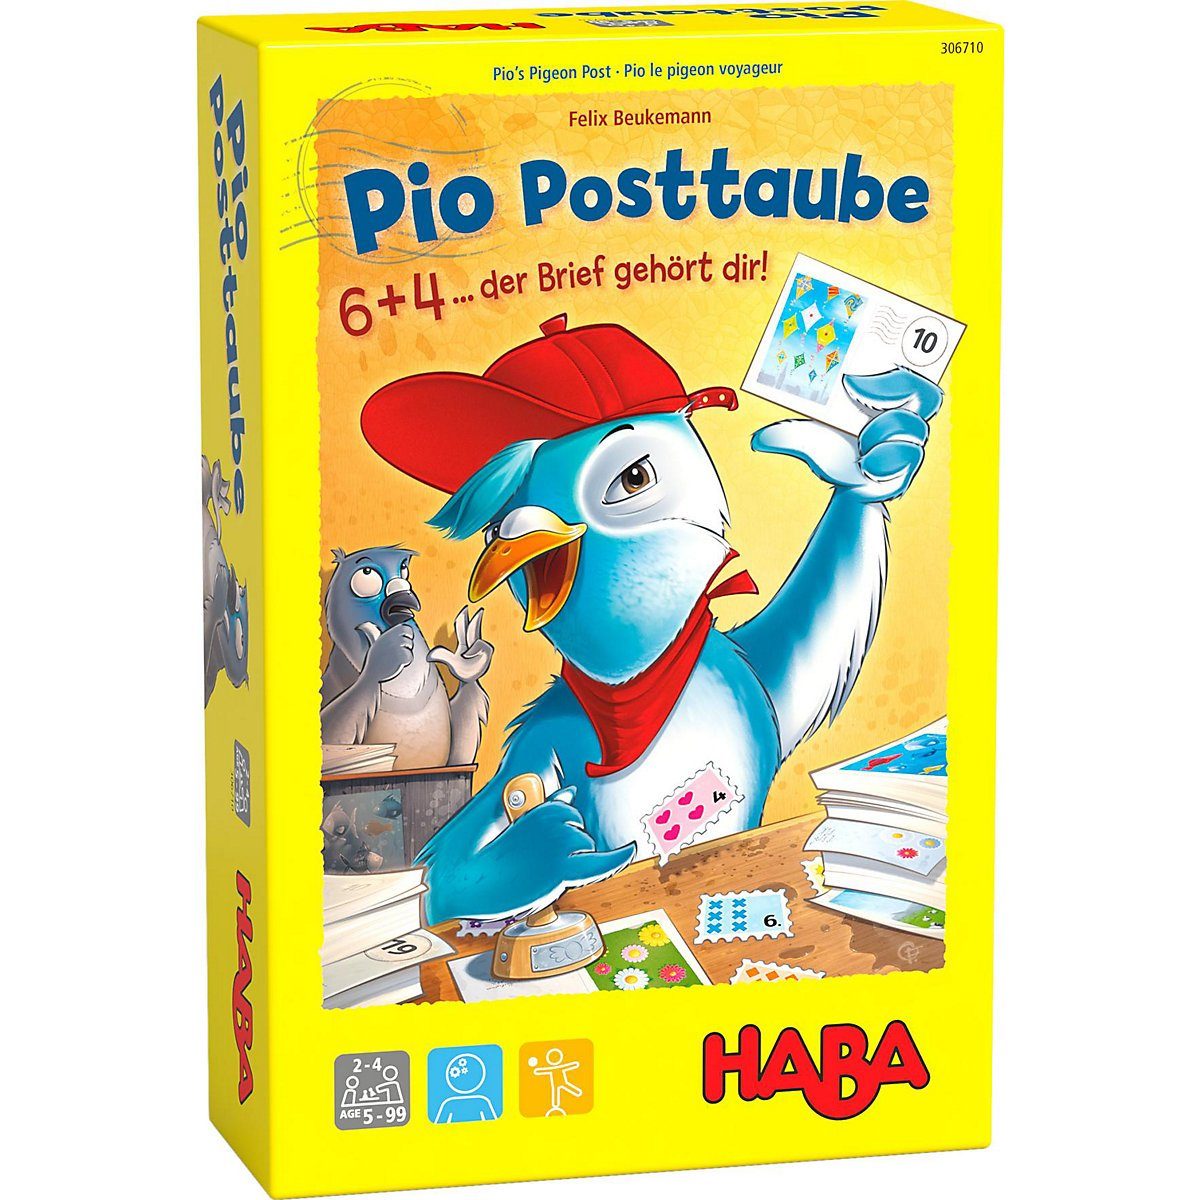 Haba Lernspielzeug »Pio Posttaube« online kaufen | OTTO